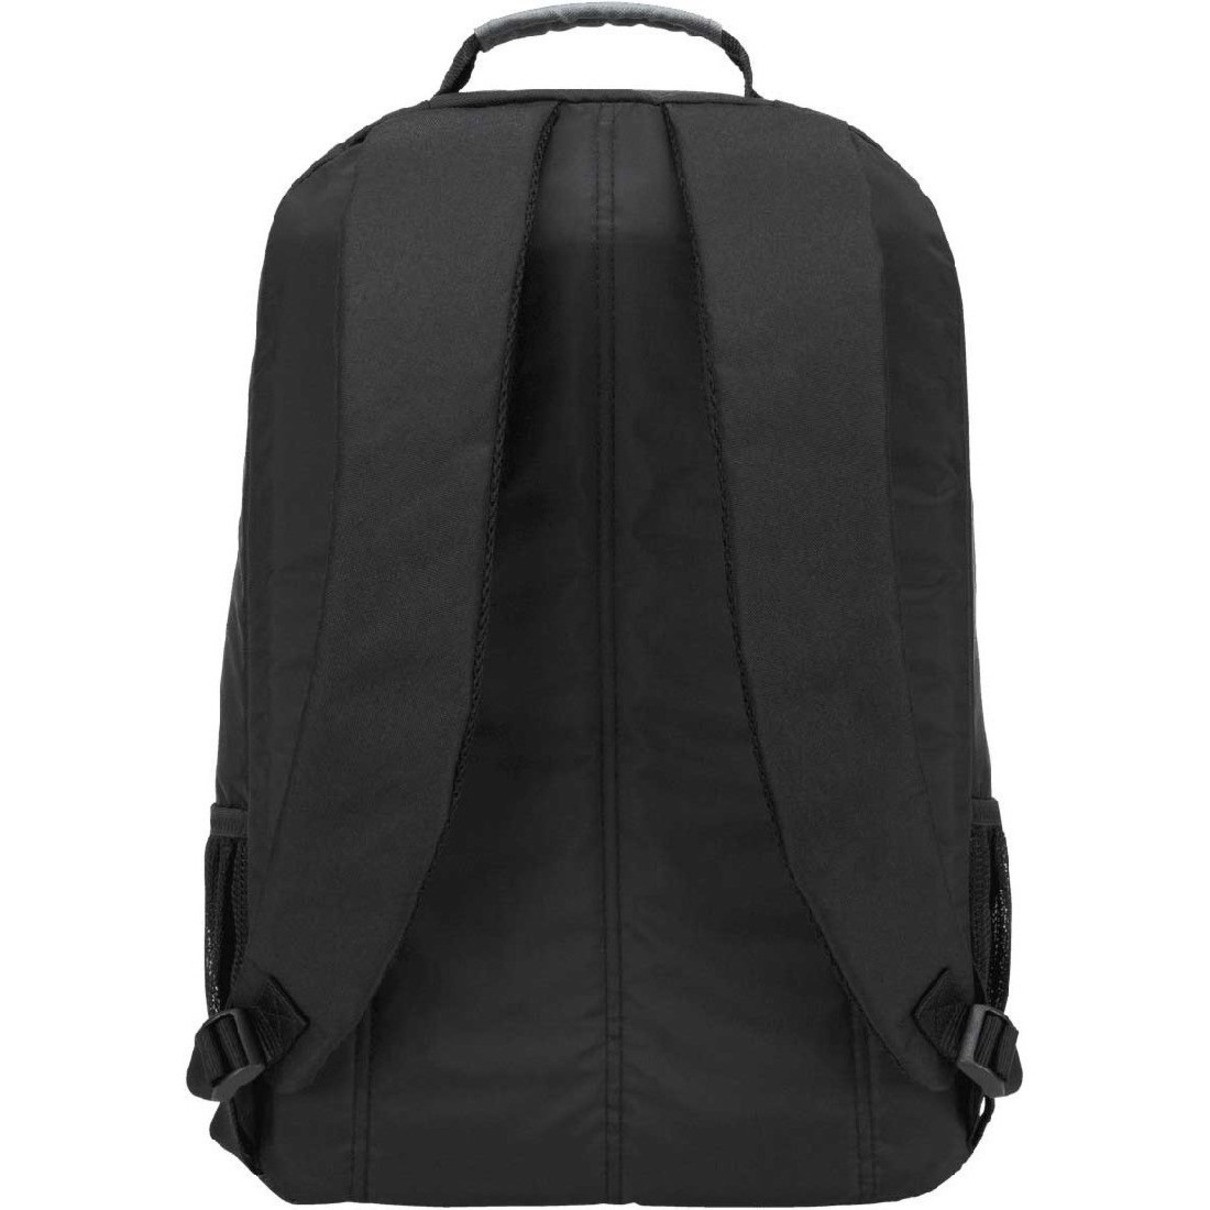 Targus Groove CVR617 Carrying Case (Backpack) for 17″ NotebookBlackShock Absorbing840D Nylon BodyFoam Interior MaterialShoulder St… CVR617